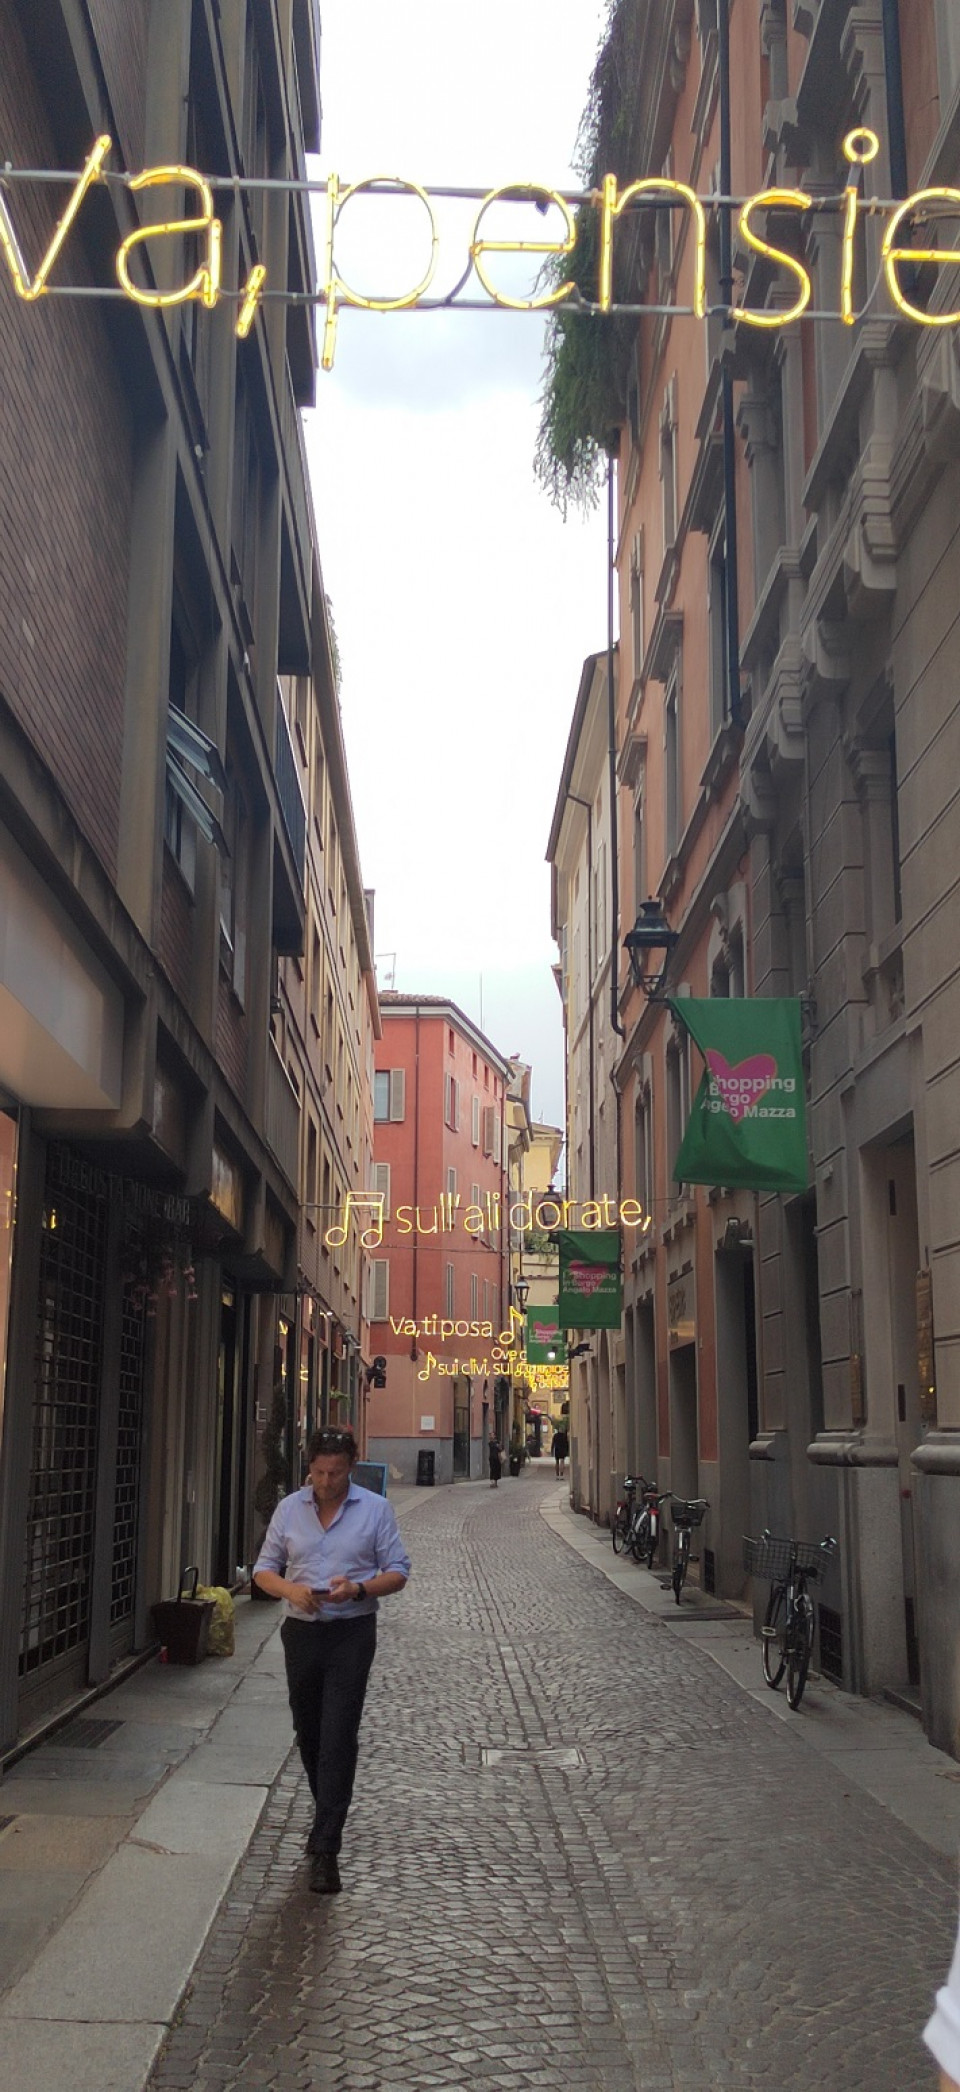 Calle de Parma con la letra de Nabucco